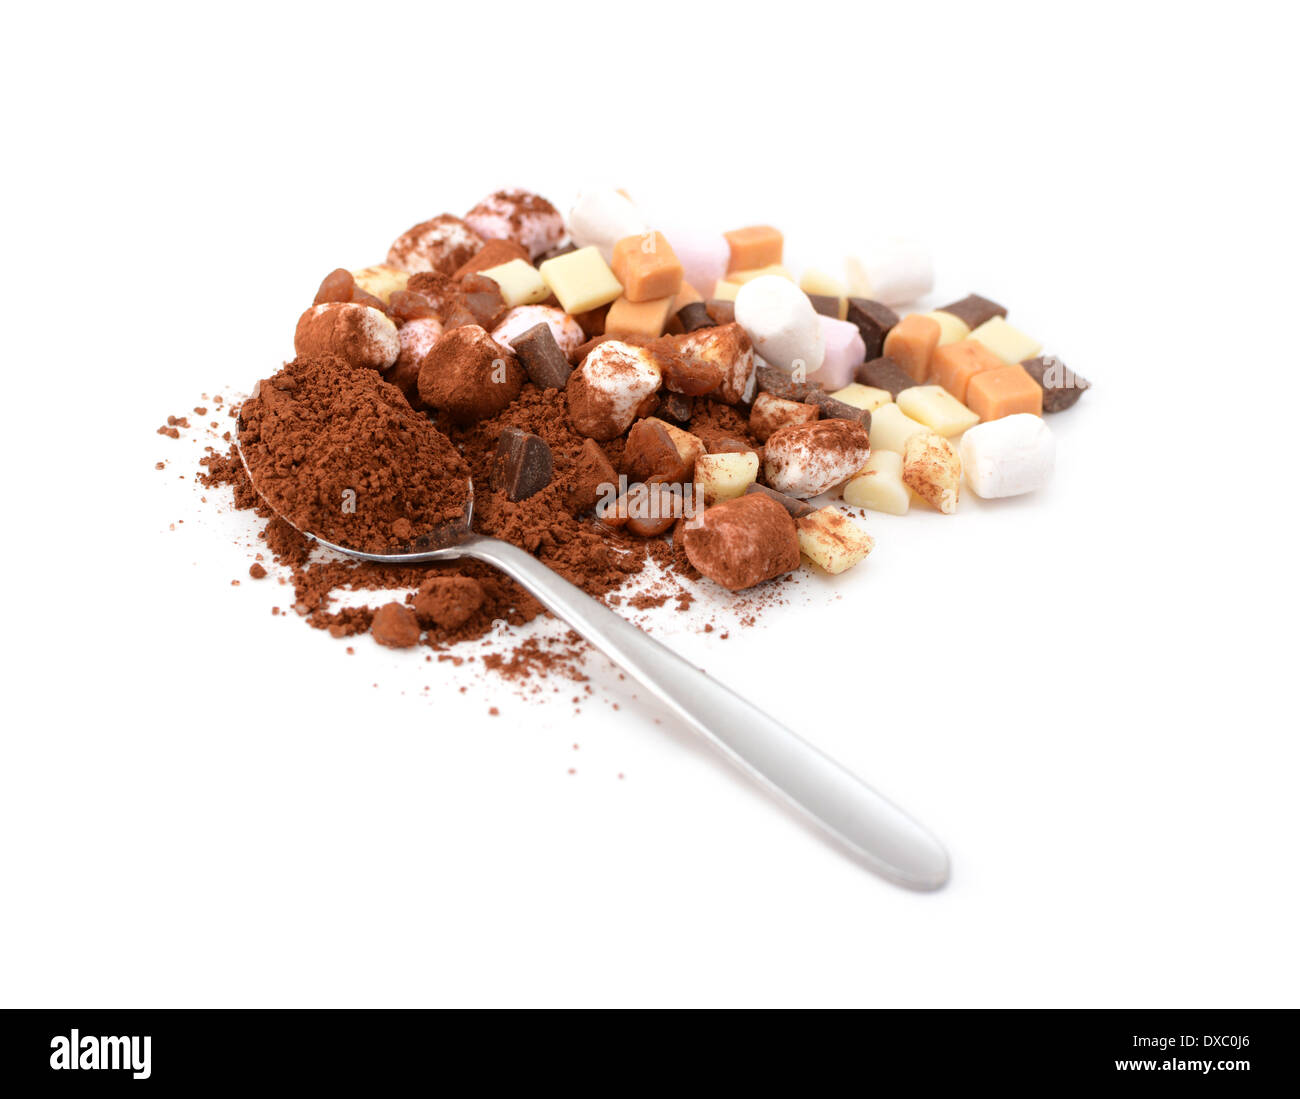 Löffel Kakao mit Marshmallows, Fudge und Karamell Stücke für heiße Schokolade, isoliert auf weißem Hintergrund Stockfoto